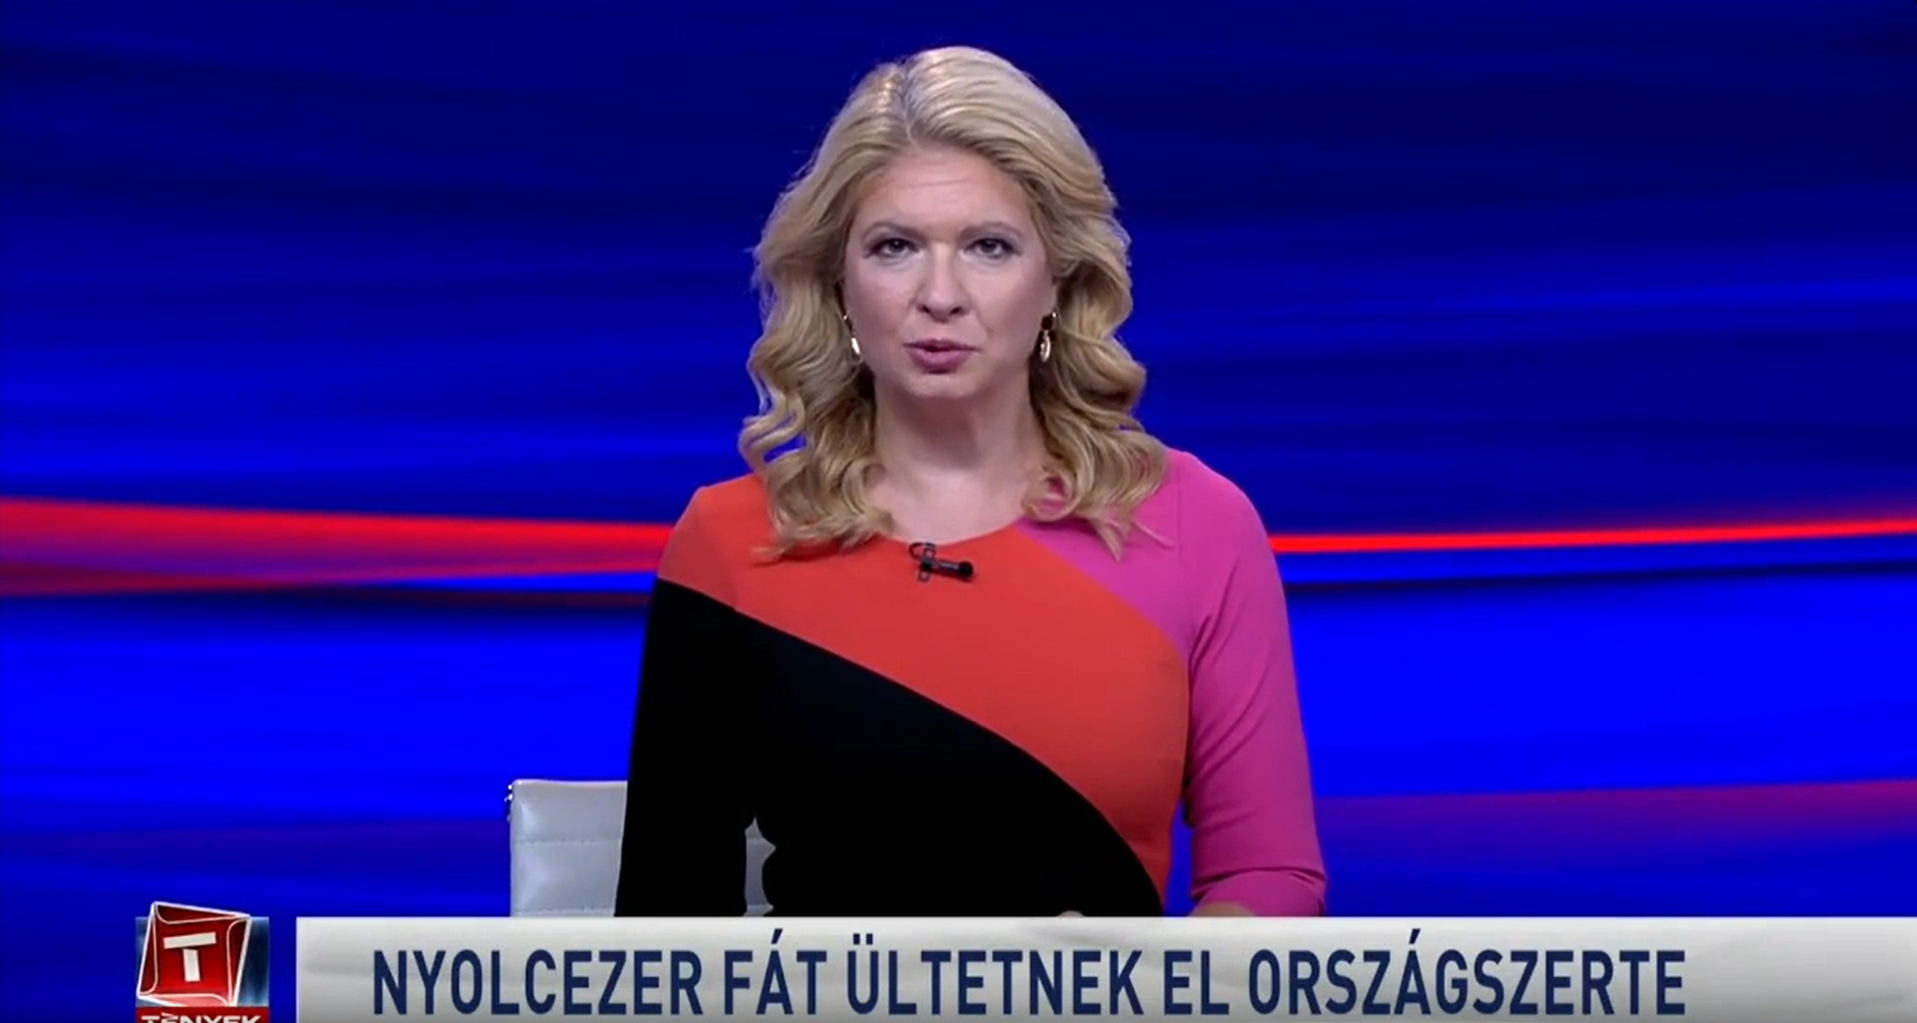 Az esti híradó közben kezdte szidni a TV2 bemondónője az MTI-t, majd háromszor futott neki egy hírnek, mert nem tudta kimondani Szalay-Bobrovniczky nevét és a „fejlesztés” szót